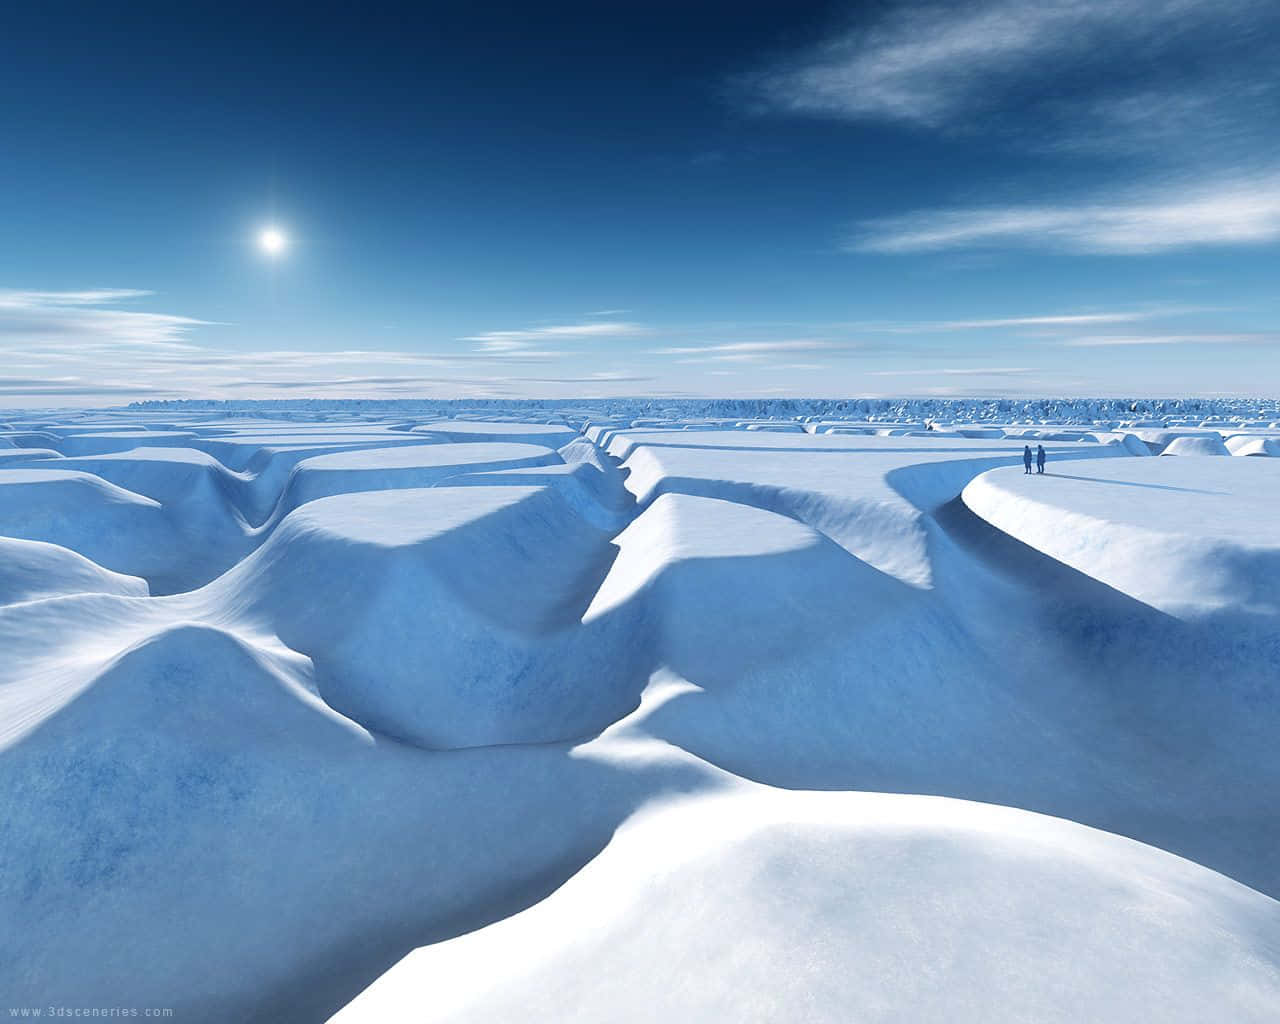 Imagendel Cañón De Hielo En El Polo Norte